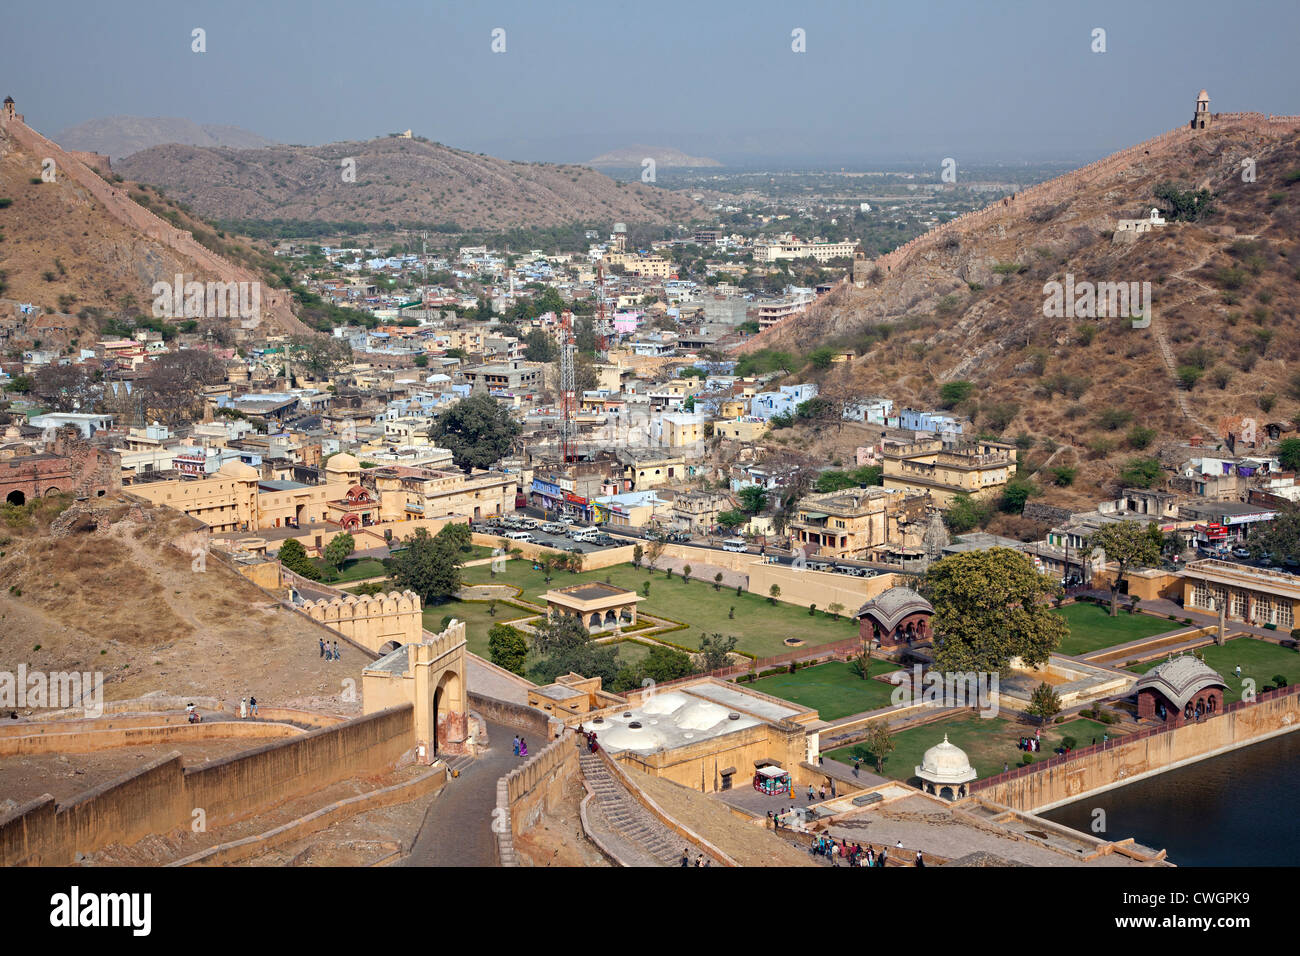 La ciudad de Jaipur, visto desde el Fuerte Amer / Fuerte Amber, palacio de arenisca roja en Amer cerca de Jaipur, Rajasthan, India Foto de stock